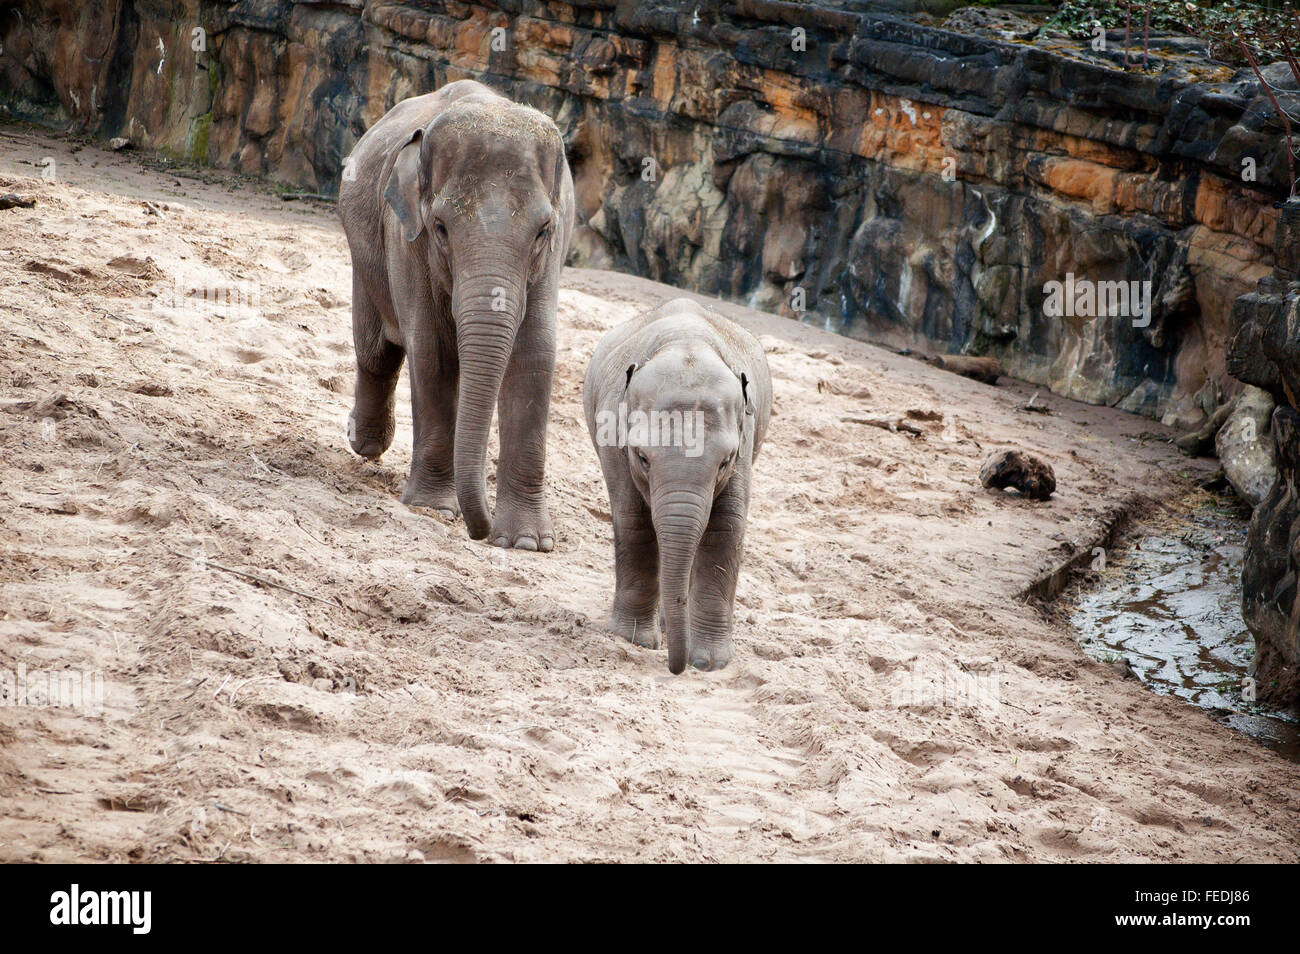 La madre y el bebé elefante asiático caminando dentro de un gabinete en cautividad (en un Zoo) Foto de stock